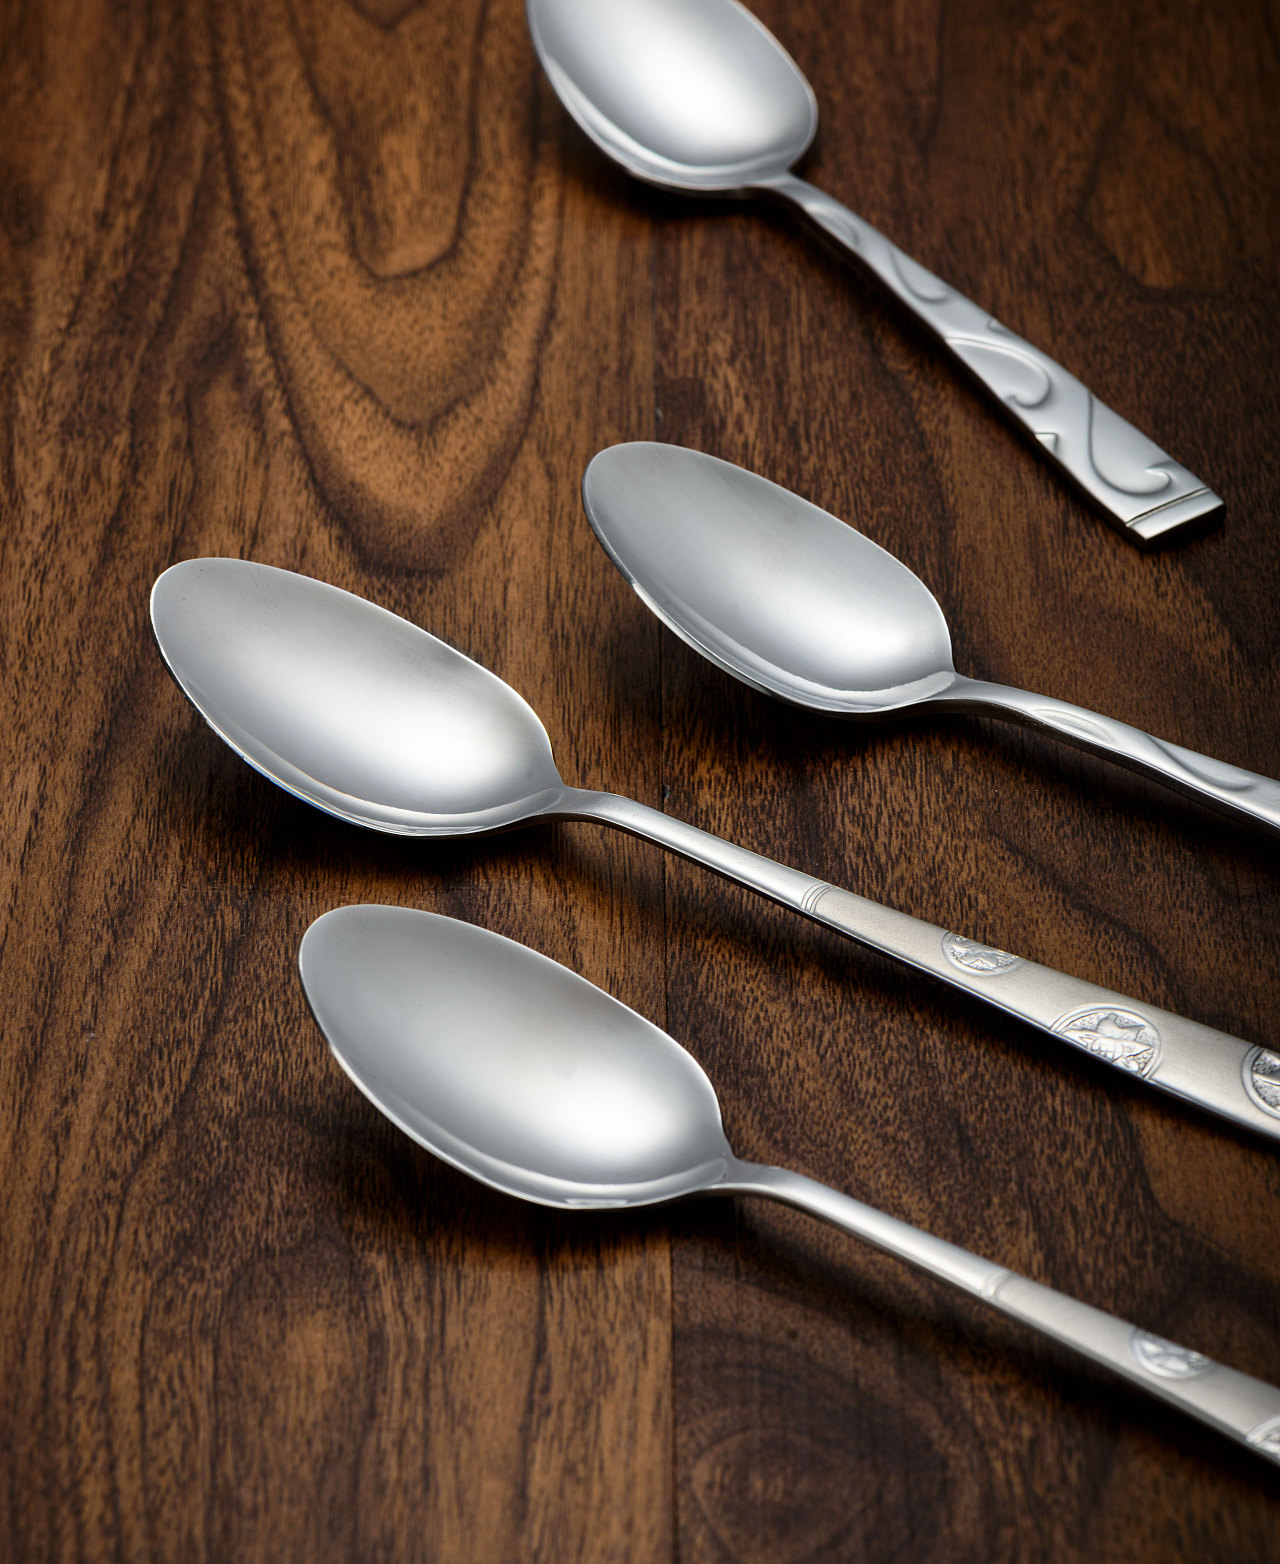 新款不锈钢陶瓷柄勺子 创意勺子 陶瓷勺子批发 咖啡冰长勺子厂家-阿里巴巴